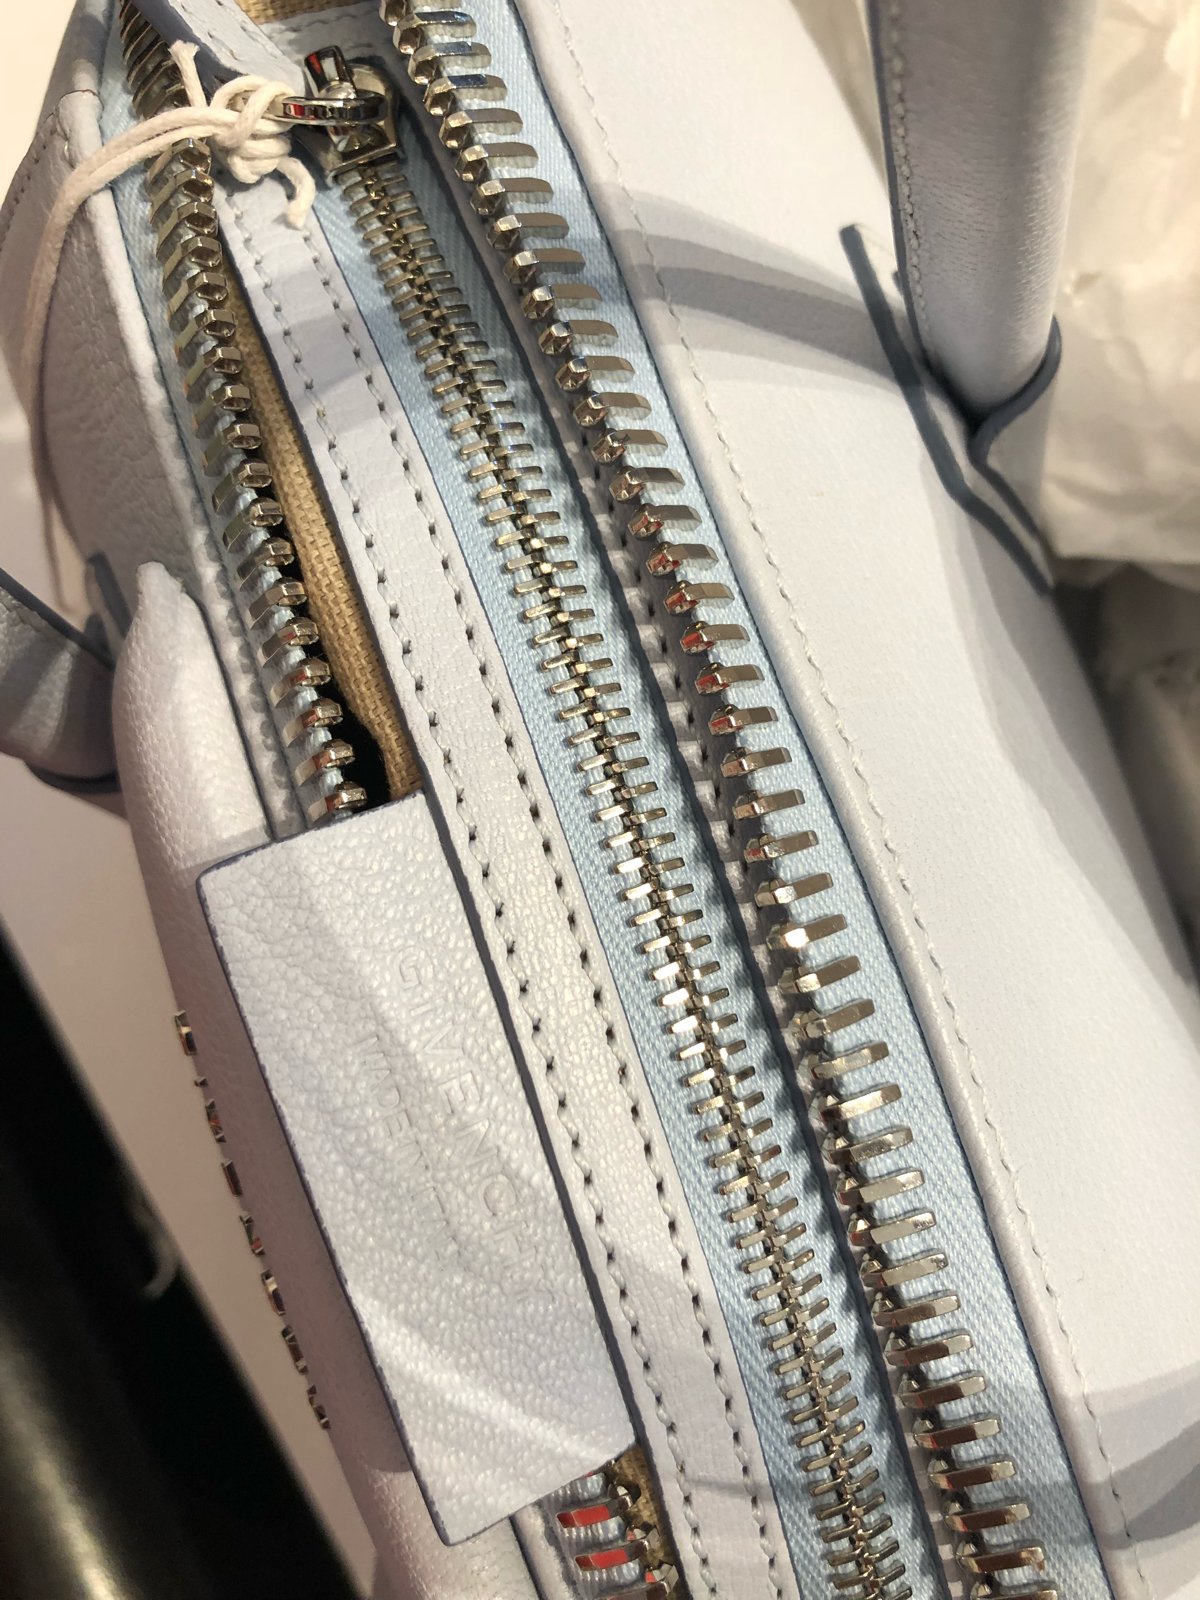 Givenchy Mini Antigona Leather Handbag